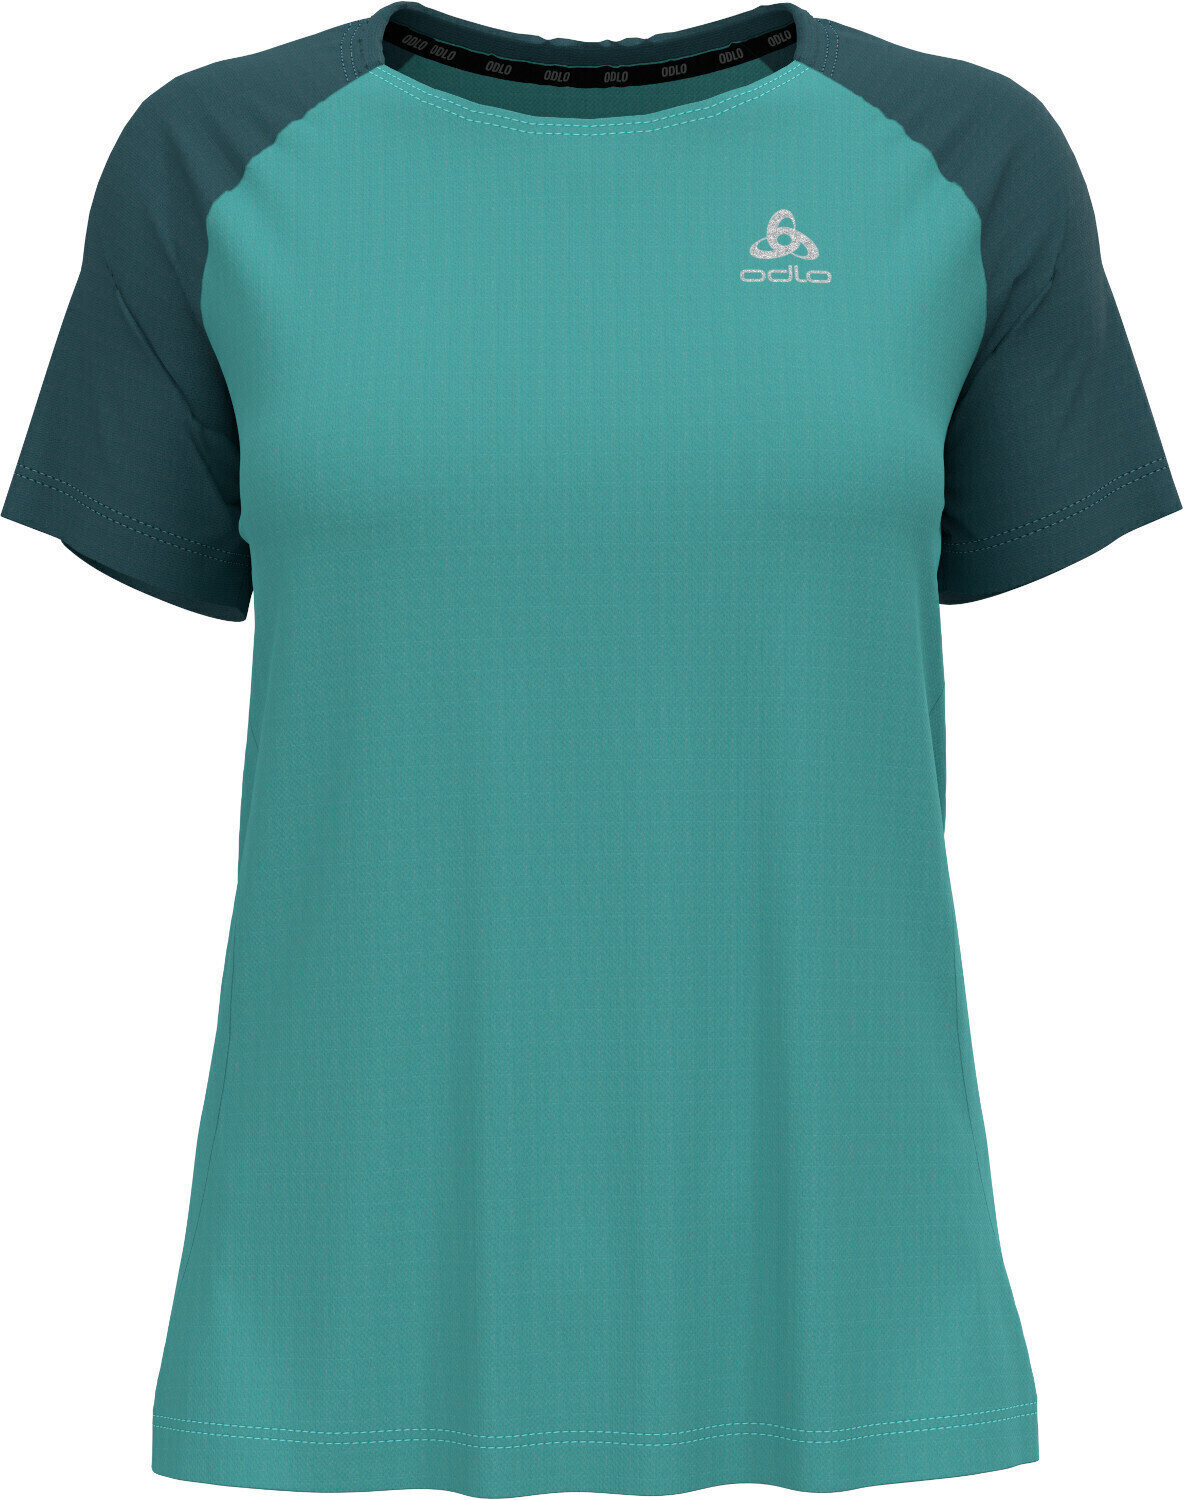 Majica za trčanje s kratkim rukavom
 Odlo Essential T-Shirt Jaded/Balsam L Majica za trčanje s kratkim rukavom